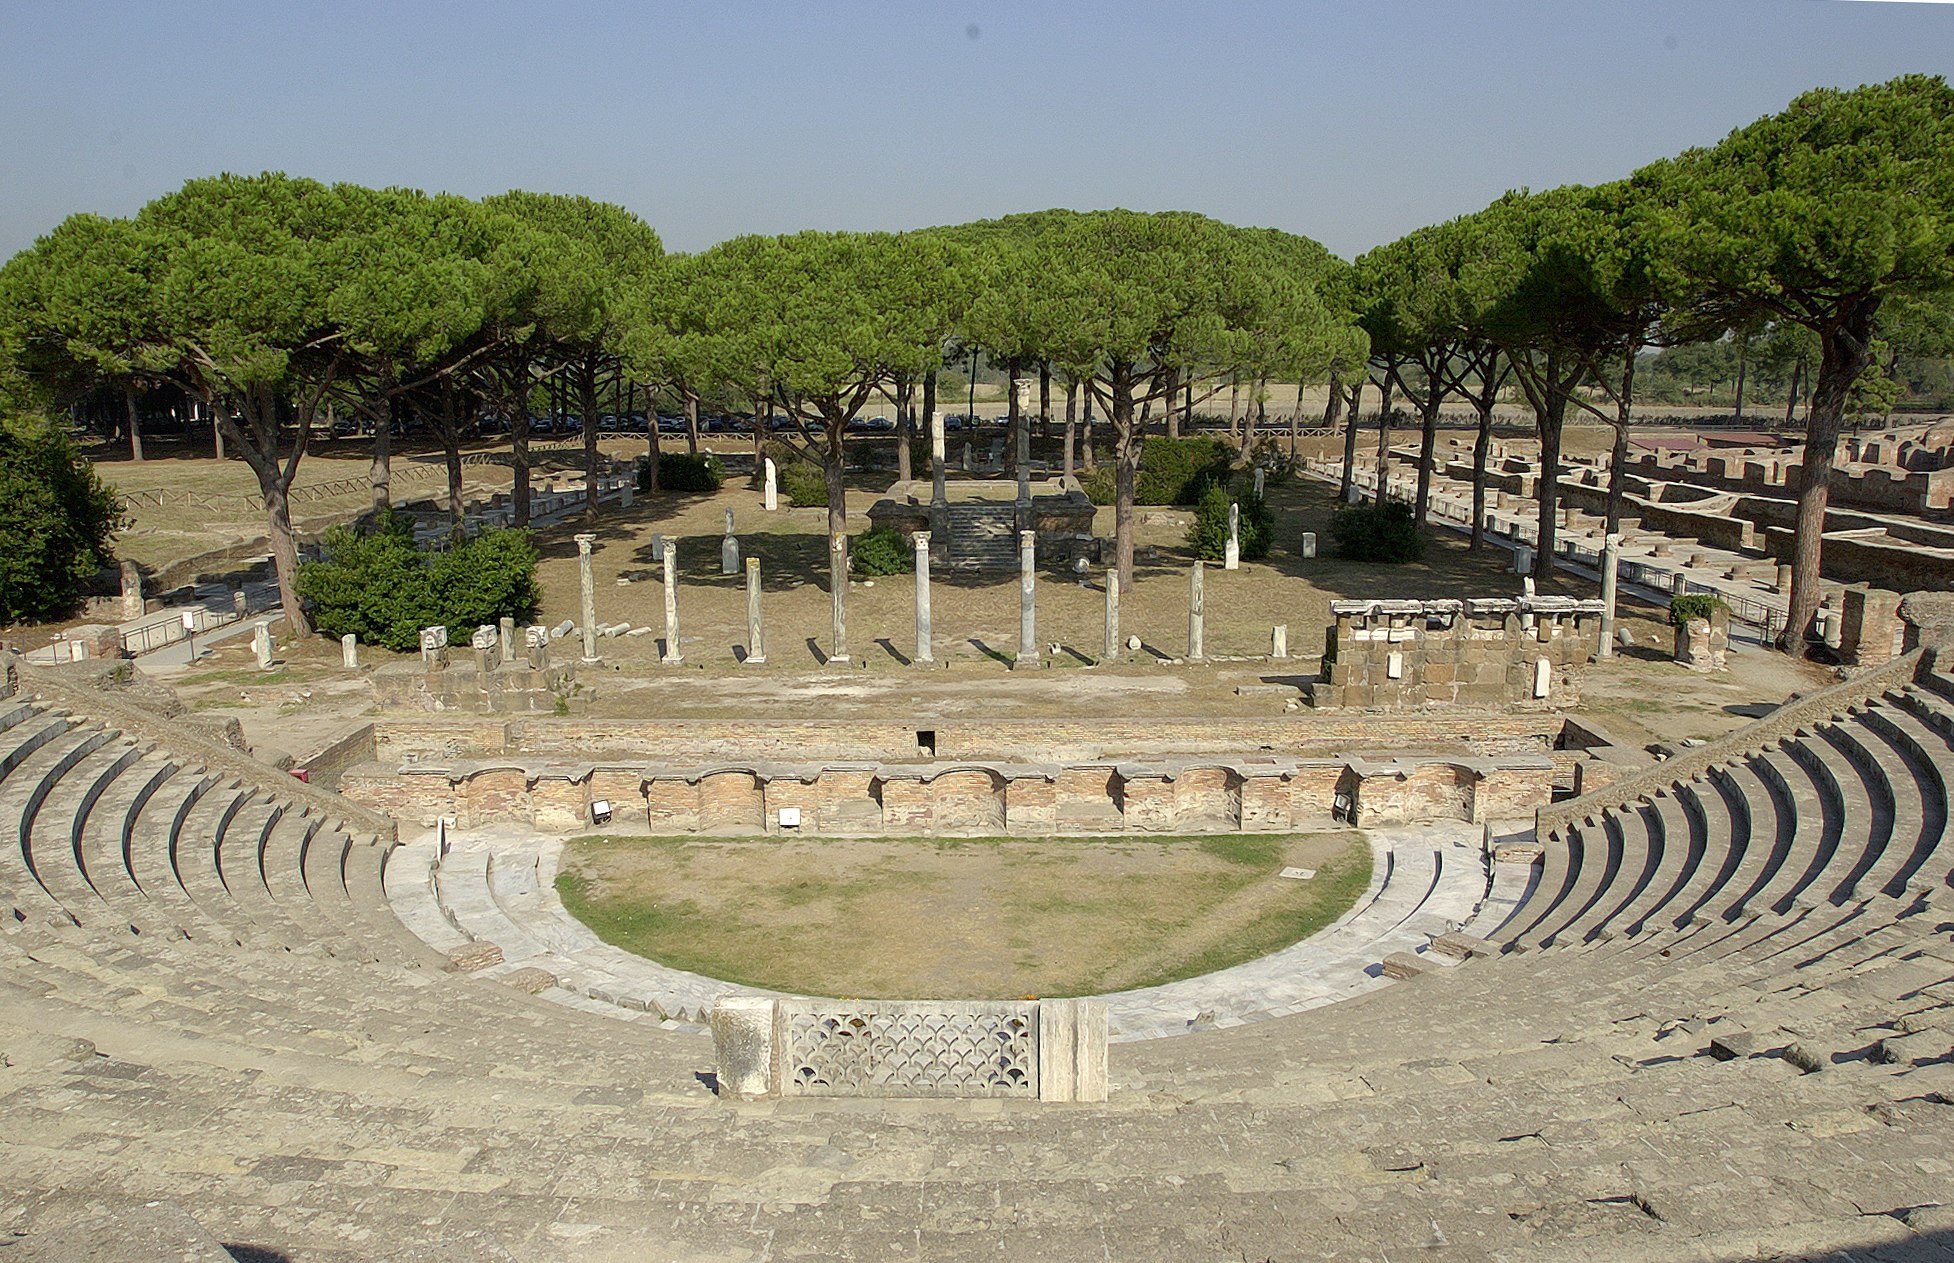 Il teatro romano del Parco archeologico di Ostia antica.  Archivio fotografico Parco archeologico Ostia antica